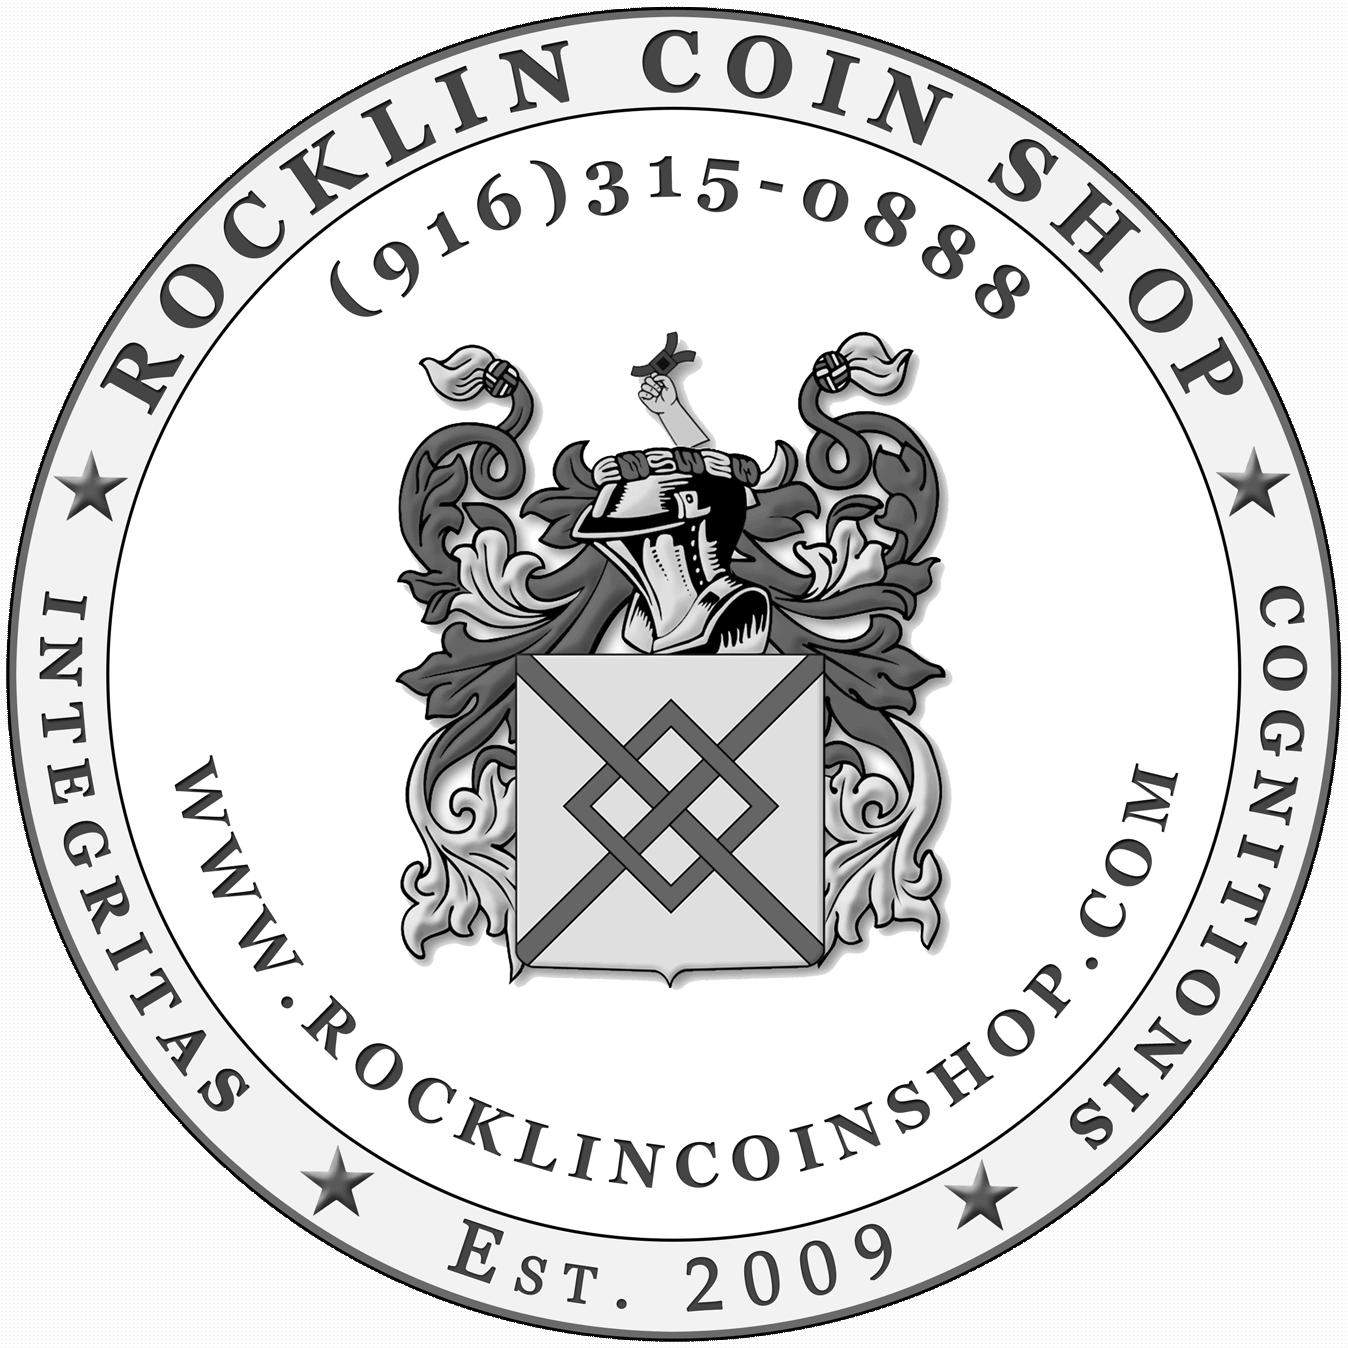 Rocklin Coin Shop